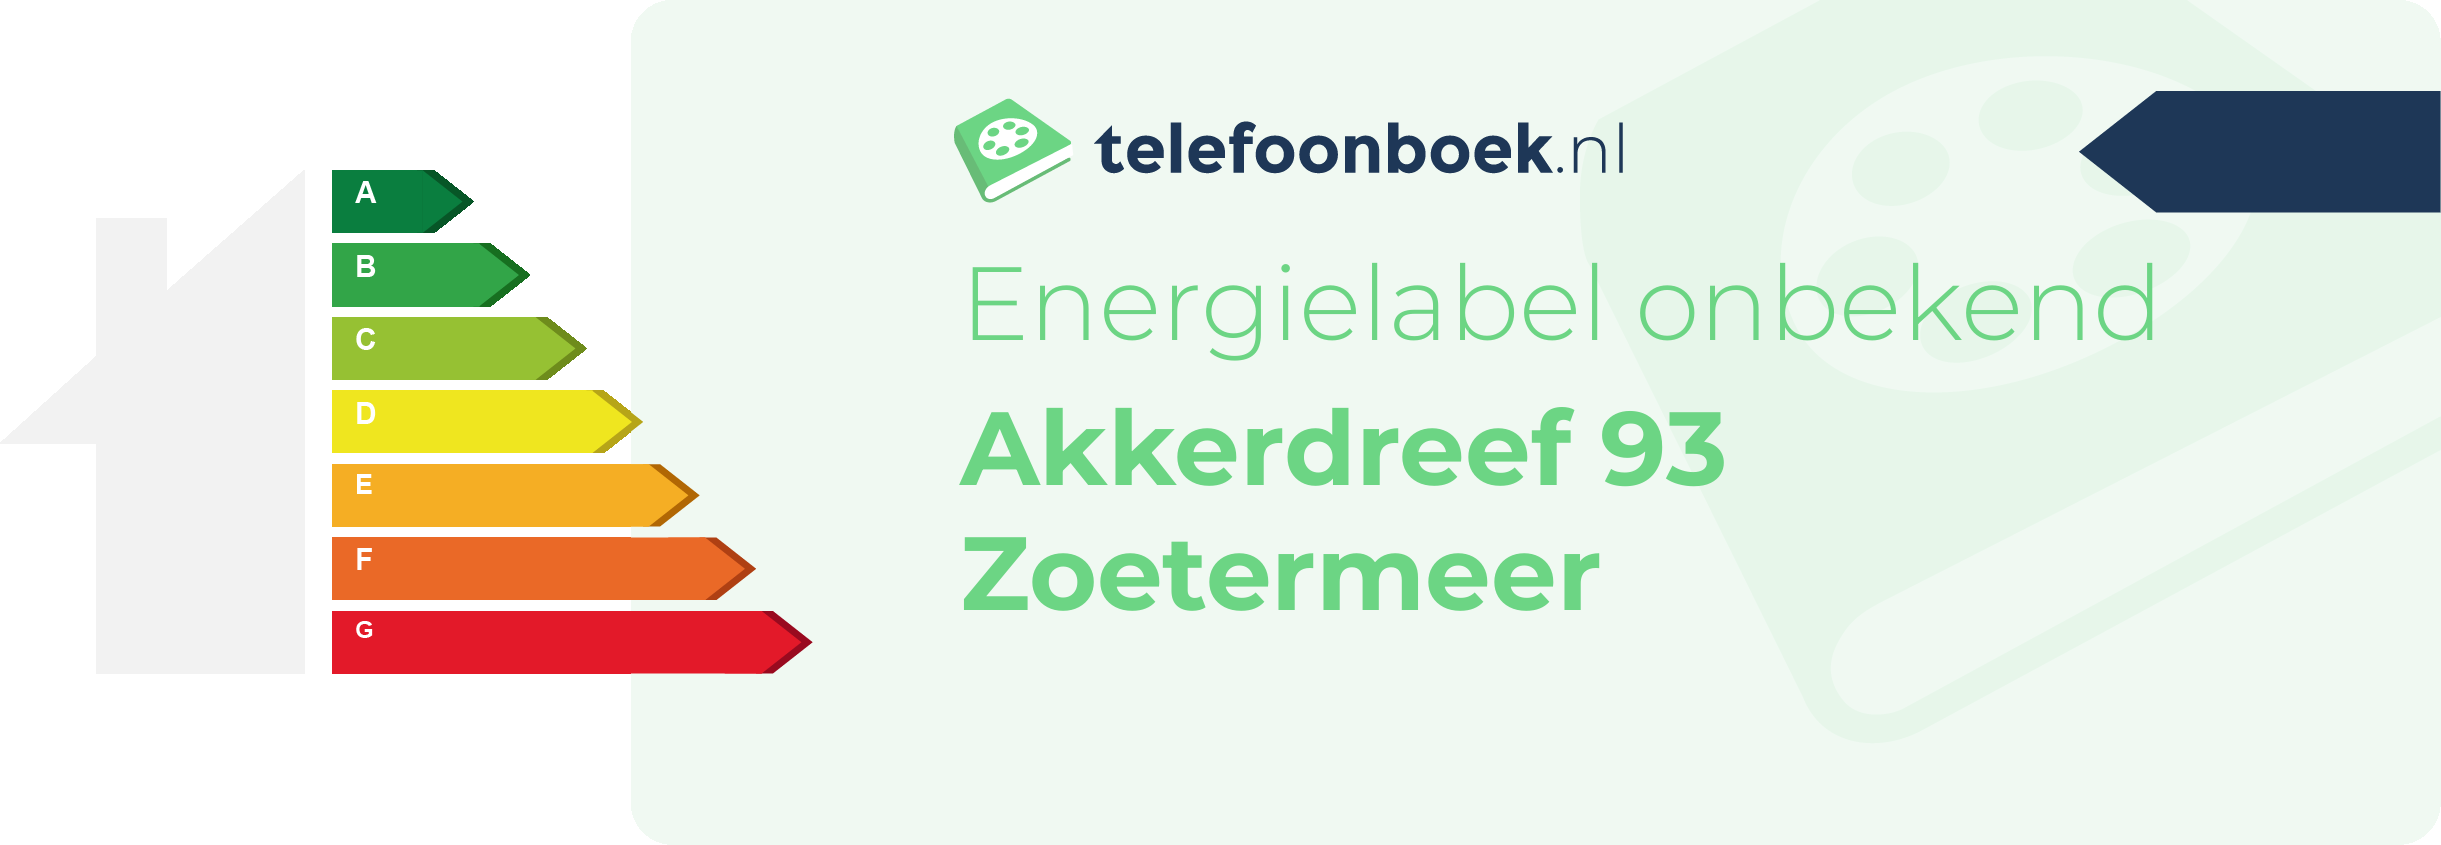 Energielabel Akkerdreef 93 Zoetermeer